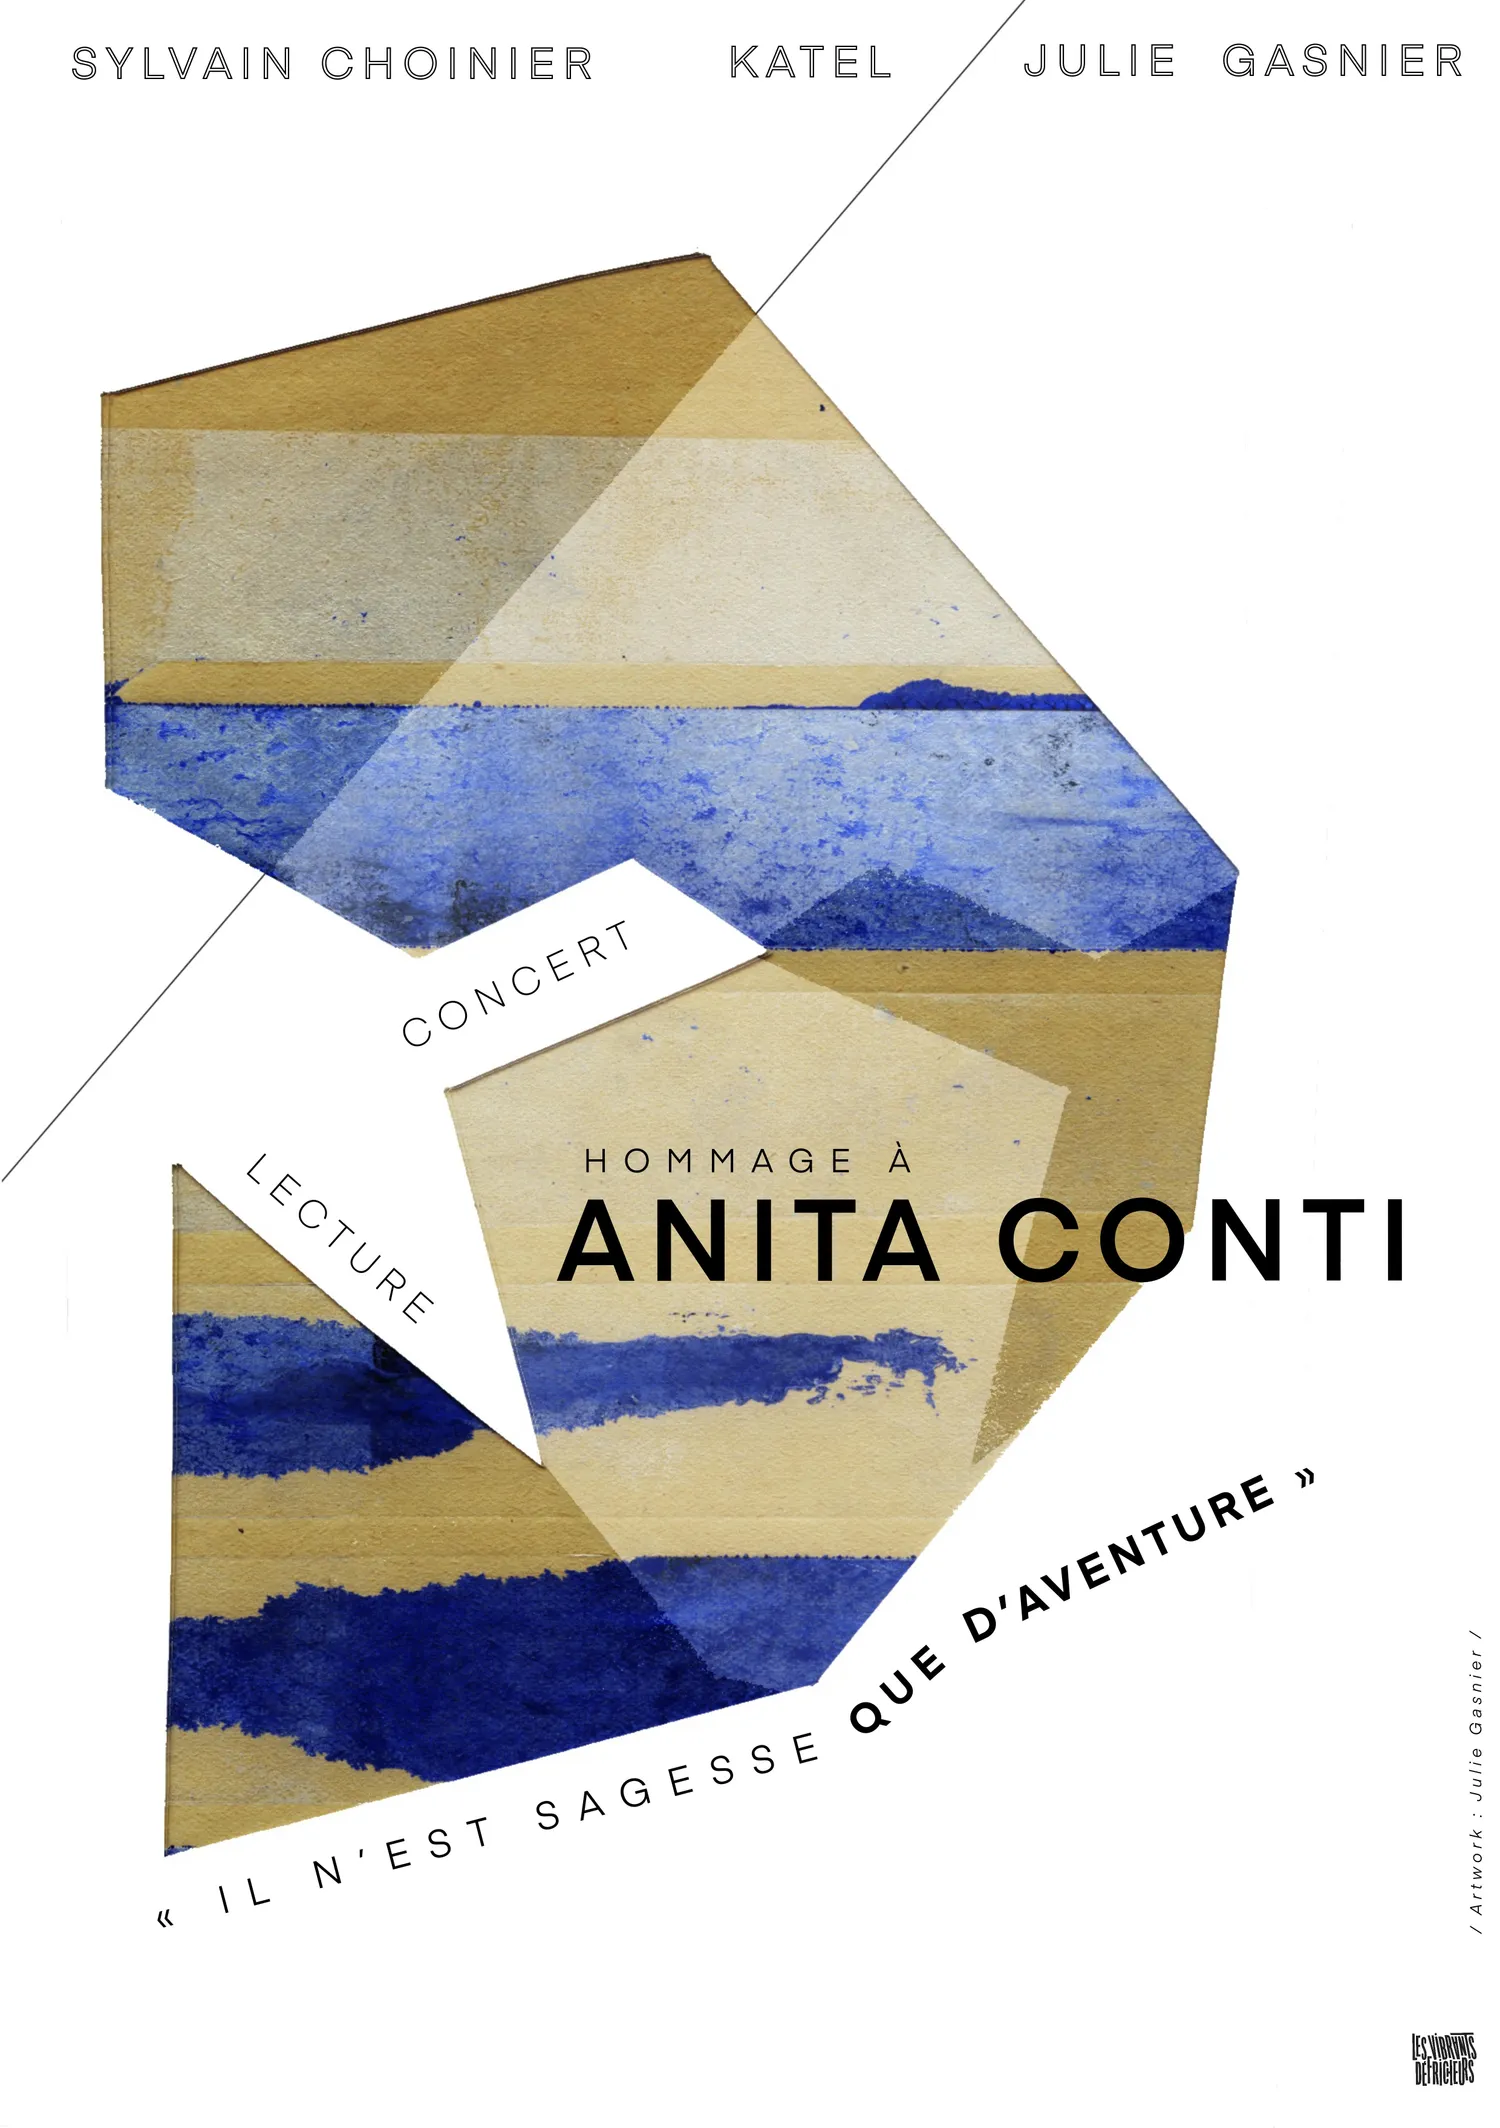 Anita Conti